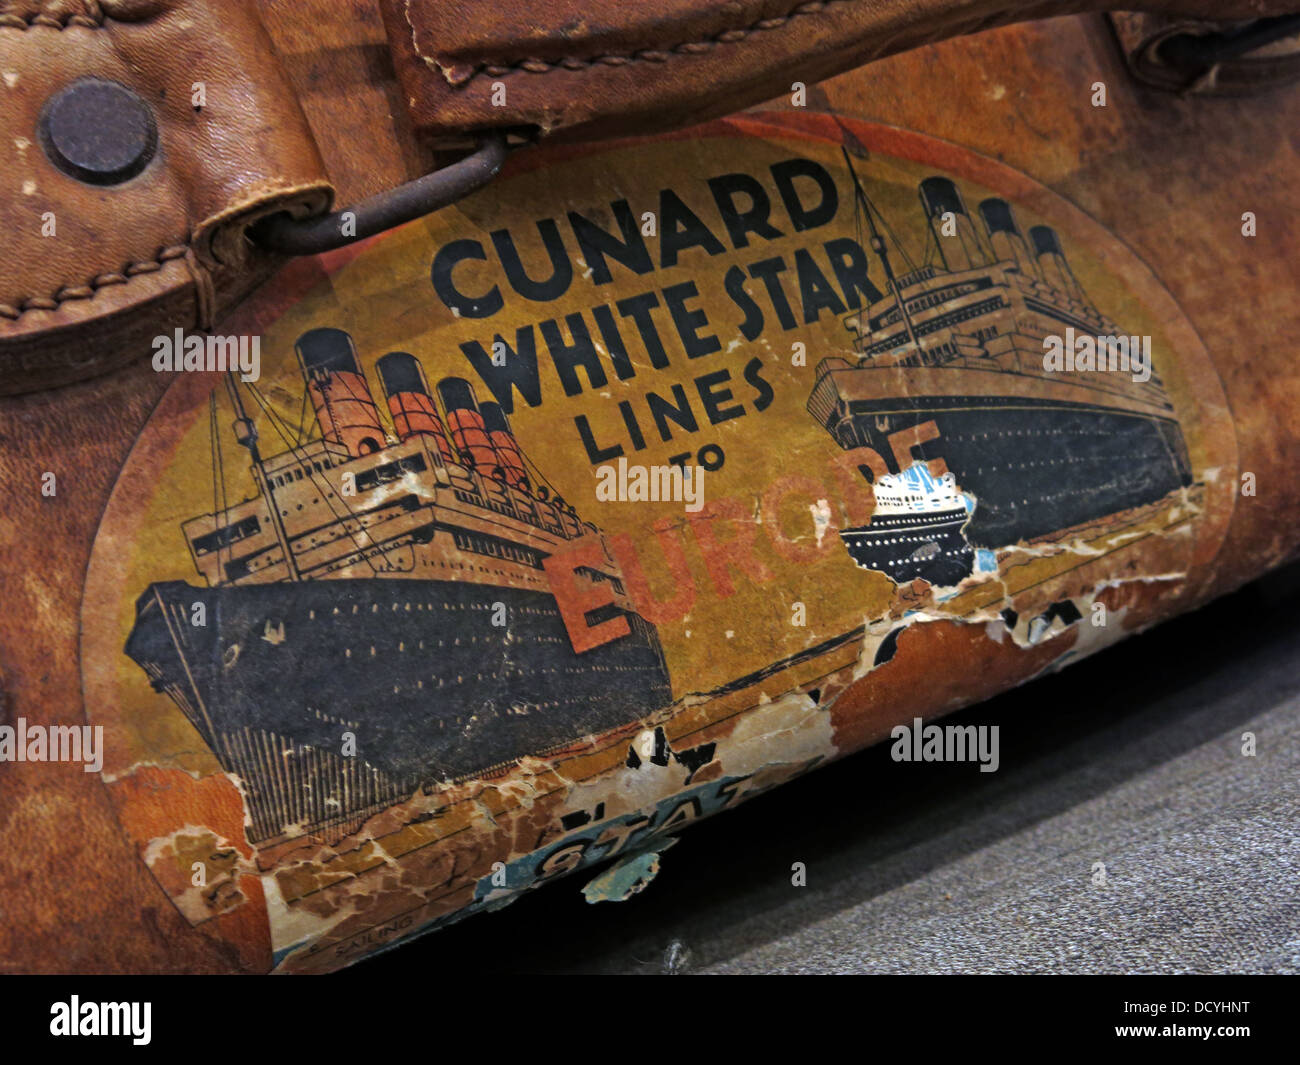 Cunard White Star Lines, étiquettes de bagages et de vieux bagages, boîtes de cas, Liverpool, Angleterre, Royaume-Uni Banque D'Images